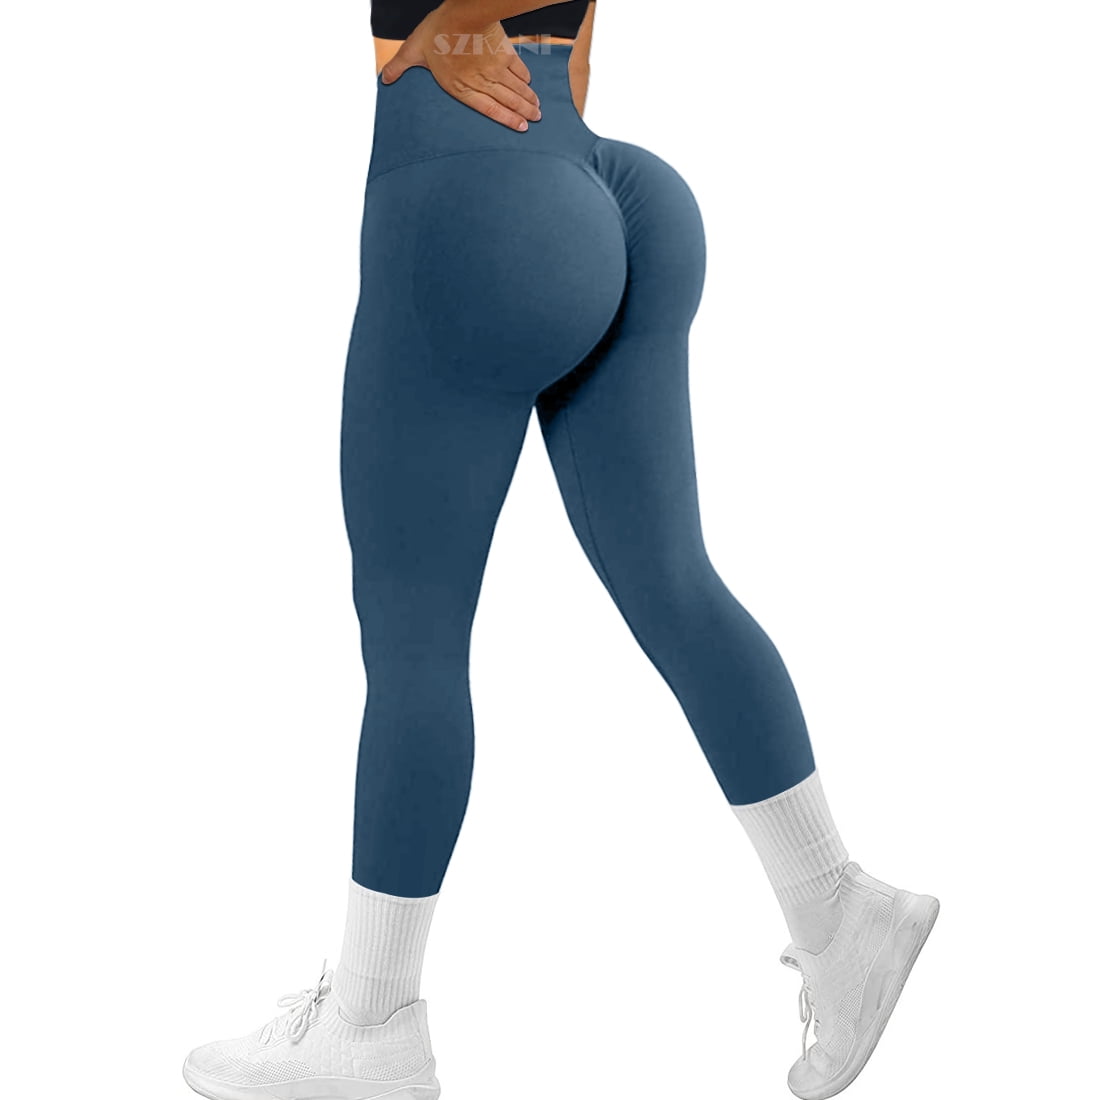 Xunerloy Seamless Workout Leggings for Women Scrunch Butt Athletic